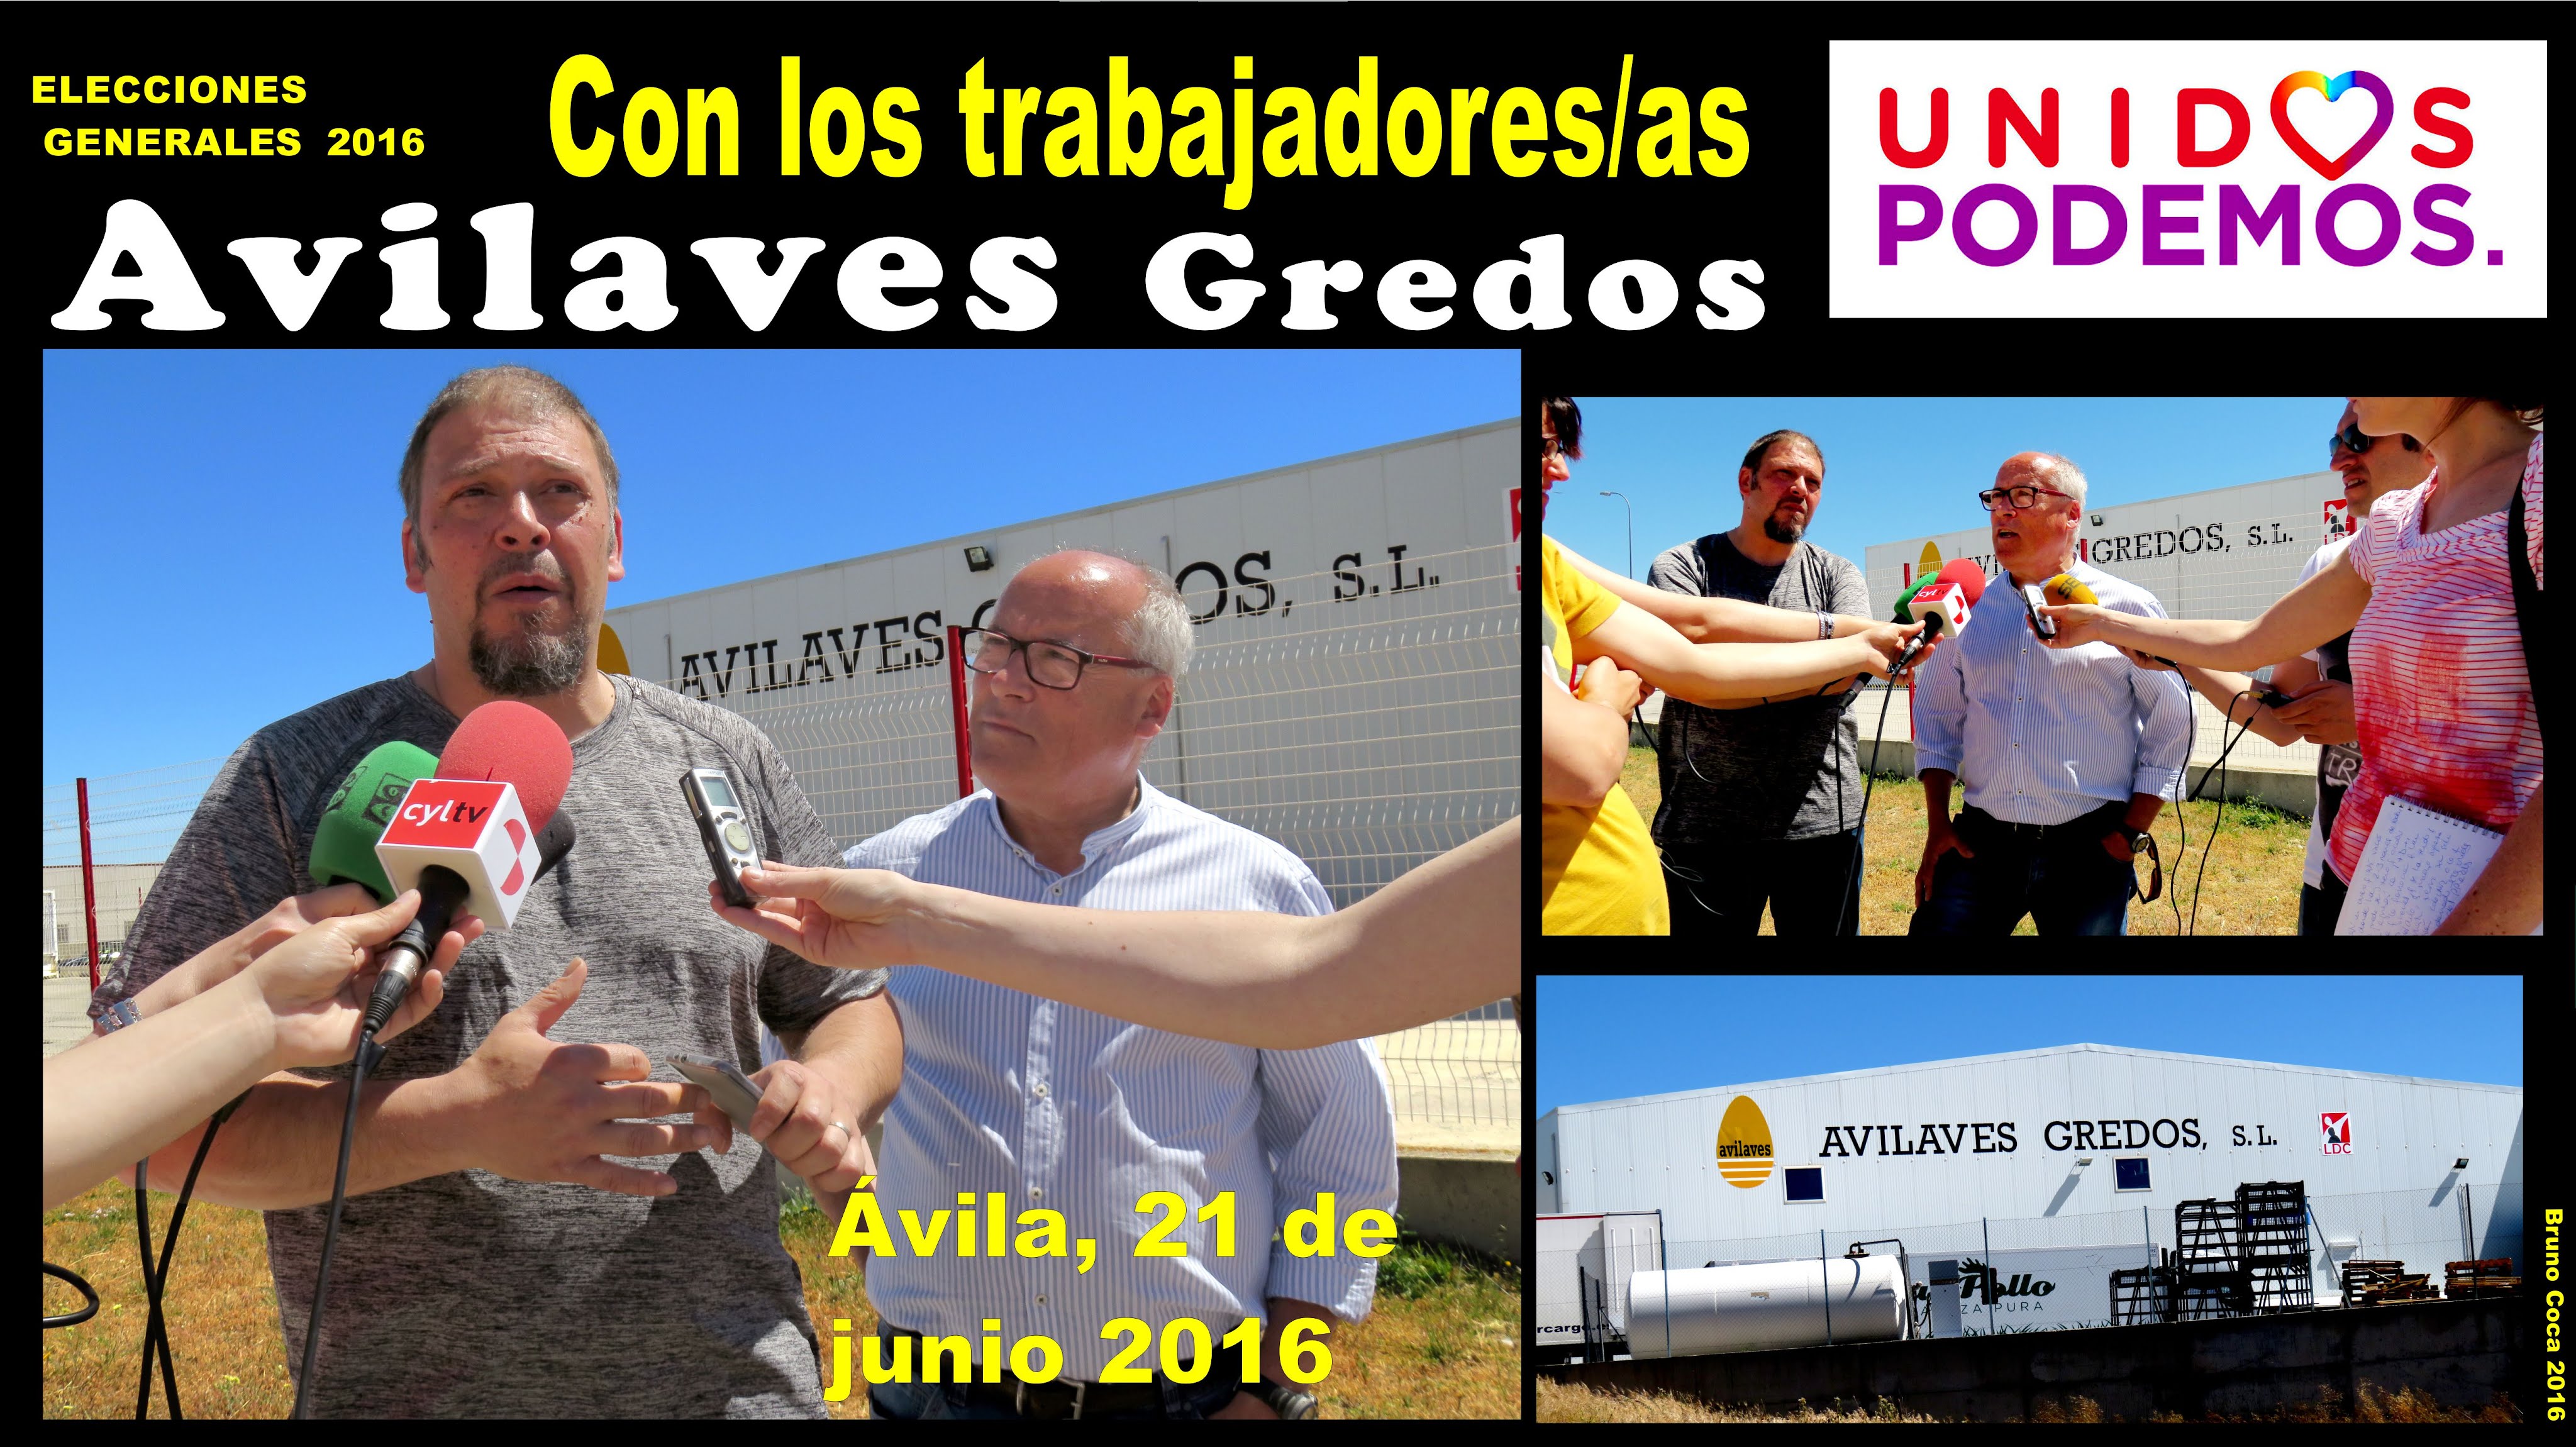 Imagen de la empresa Avilaves Gredos a la que se le ofrecen los descuentos